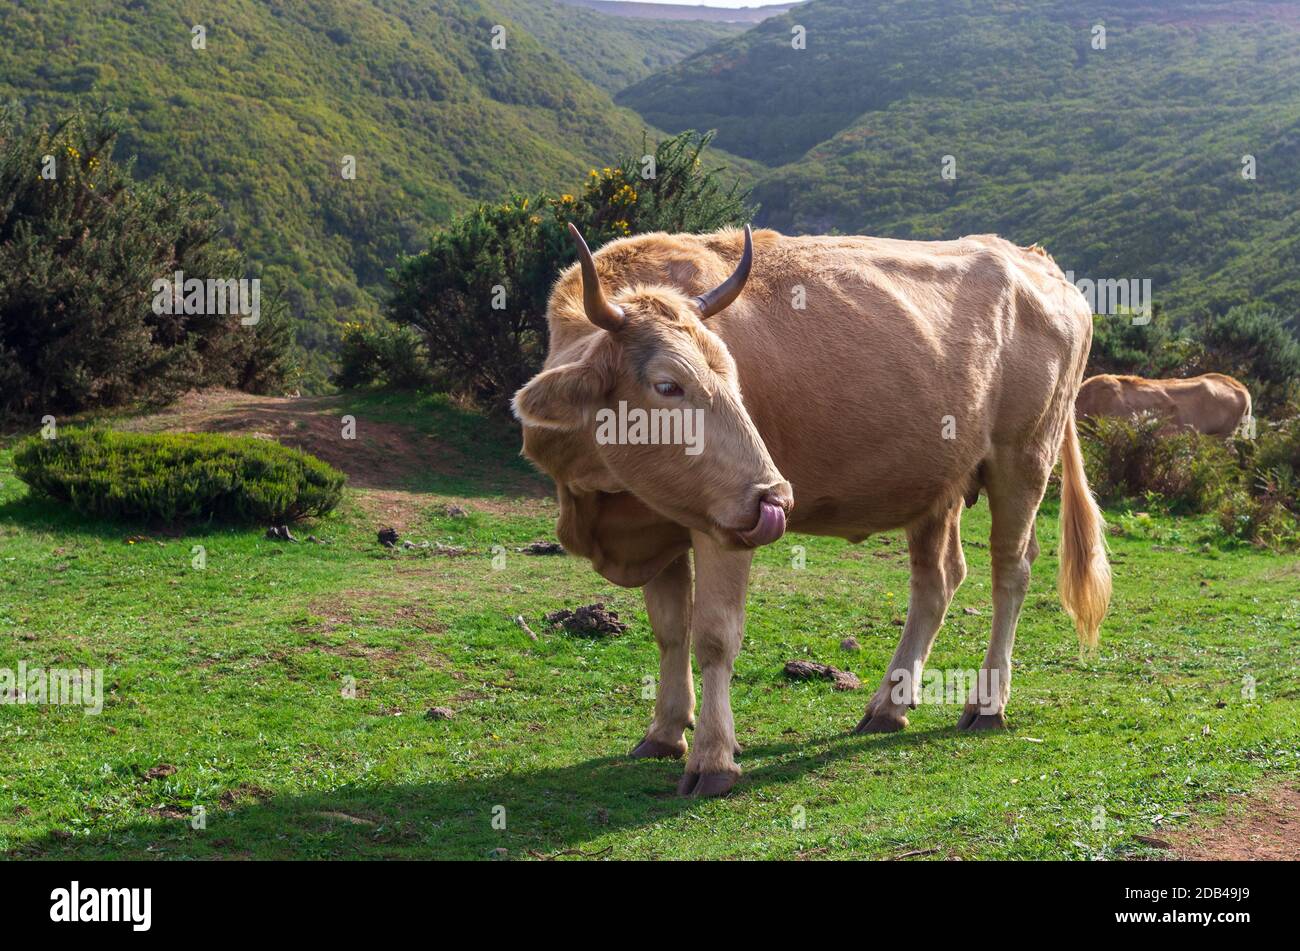 Cow standing dans la région des montagnes de l'île de Madère Banque D'Images